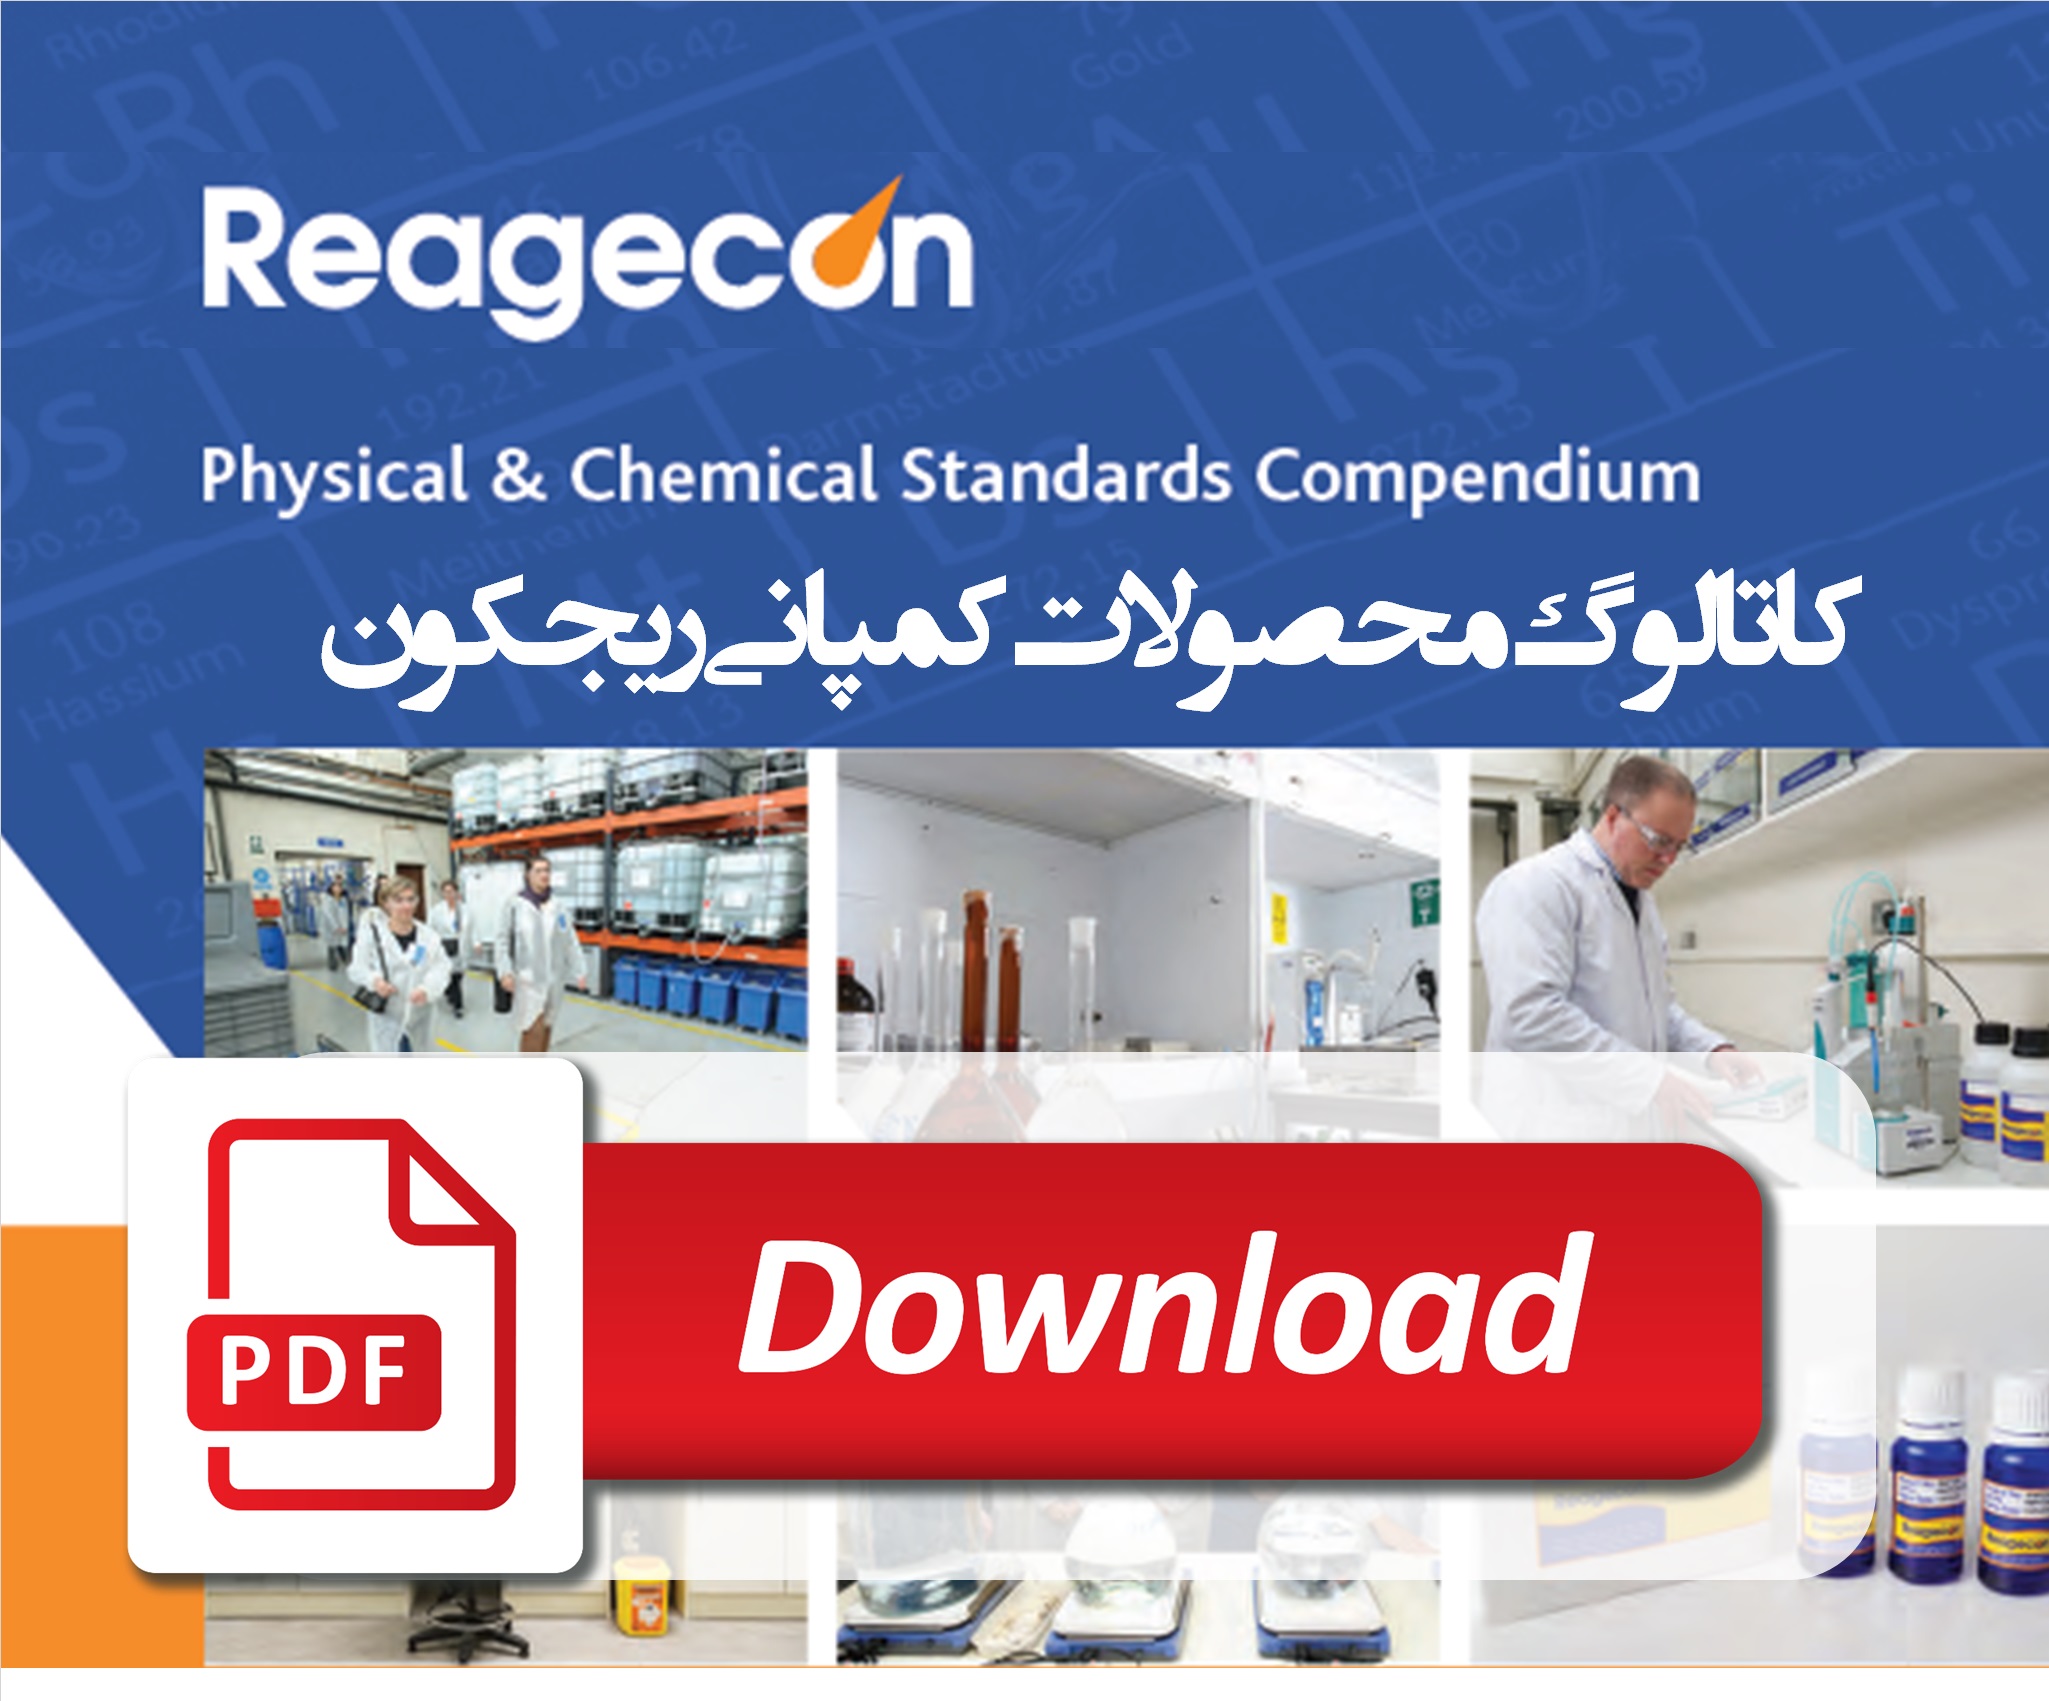 دانلود کاتالوگ مواد شیمیایی استاندارد - کمپانی Reagecon ایرلند